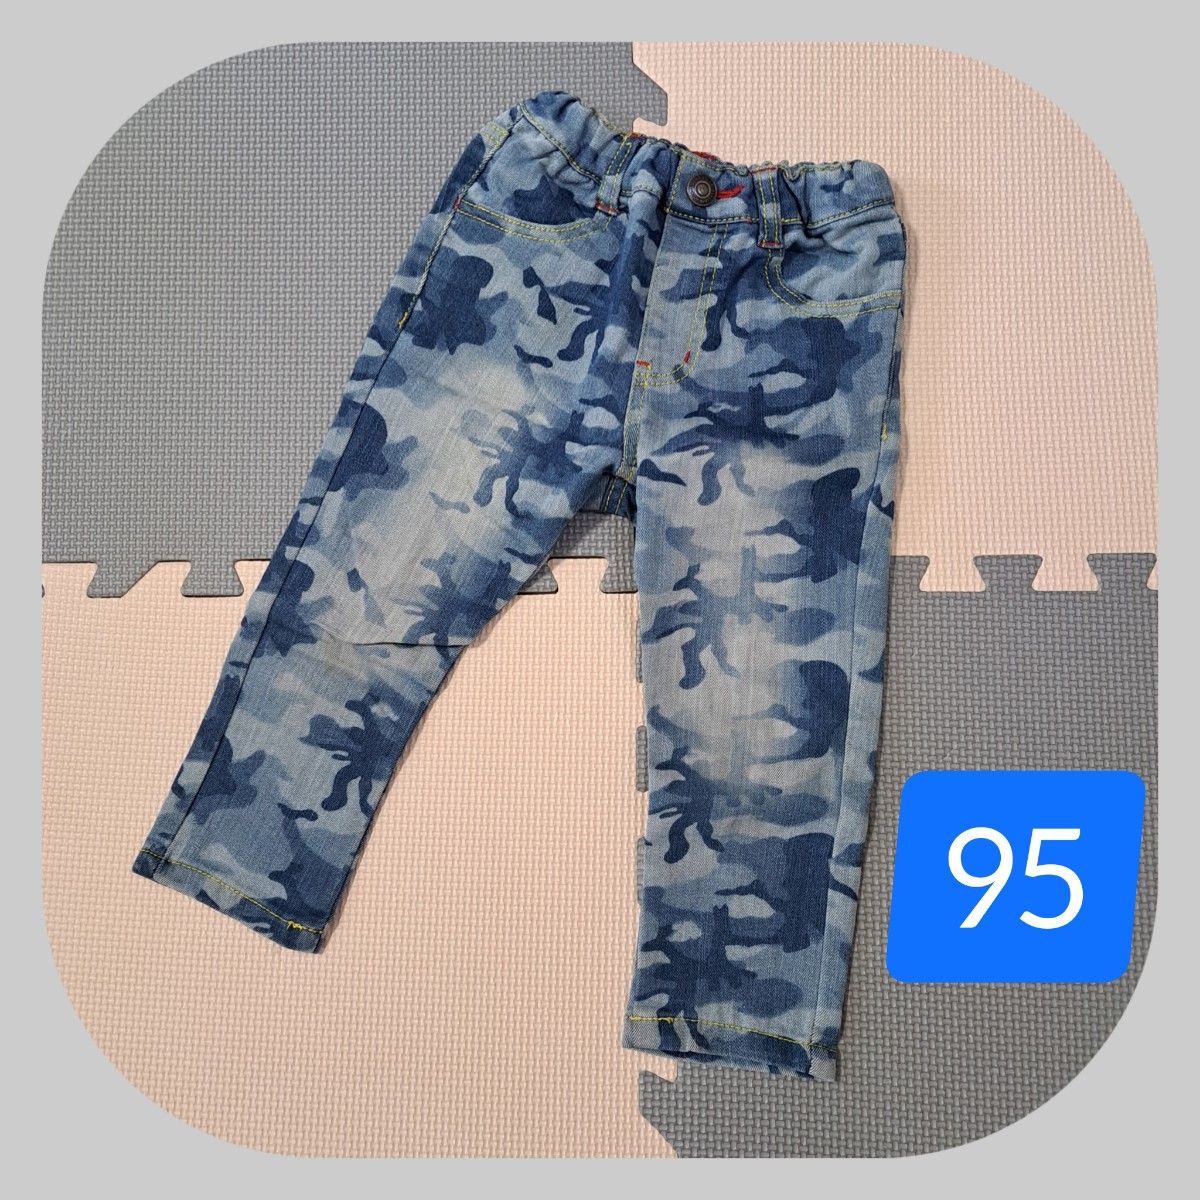 【★お値下げ★】*☆美品☆*迷彩柄 青色 ズボン パンツ 95 男の子